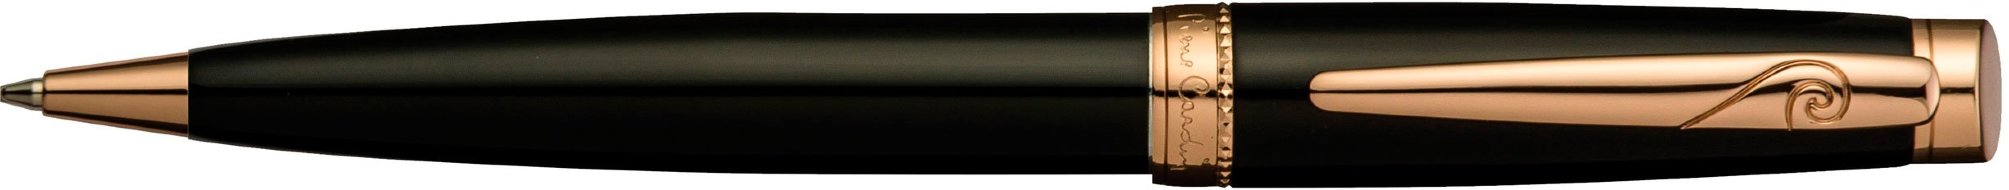 Шариковая ручка Pierre Cardin Luxor черный лак, позолота